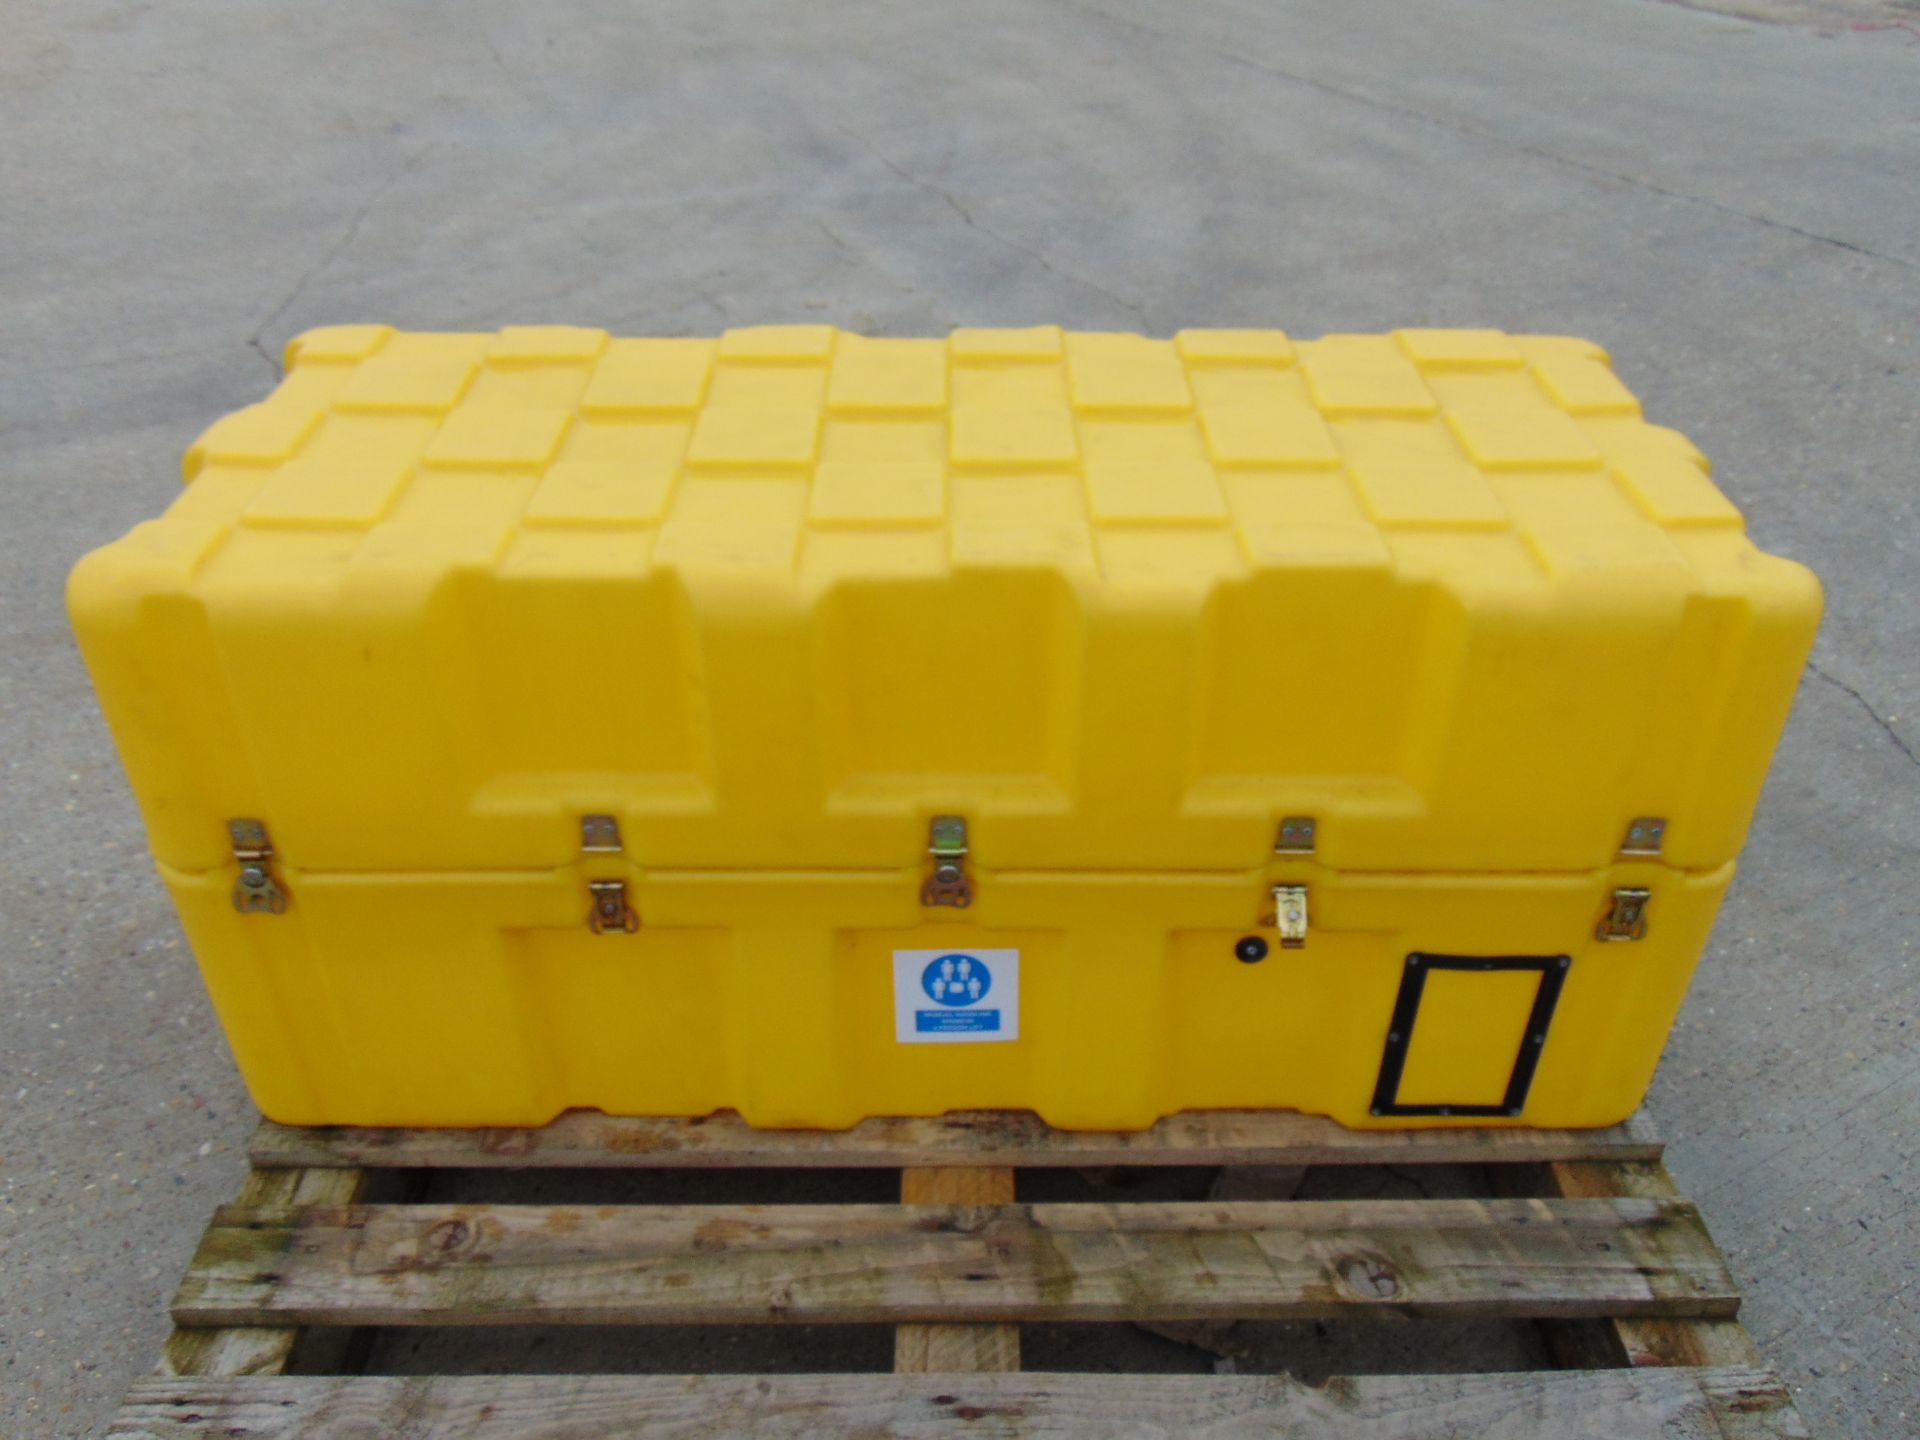 Large Heavy Duty Hardigg Peli Storage / Transit Case Ideal Expedition Storage - Image 3 of 7